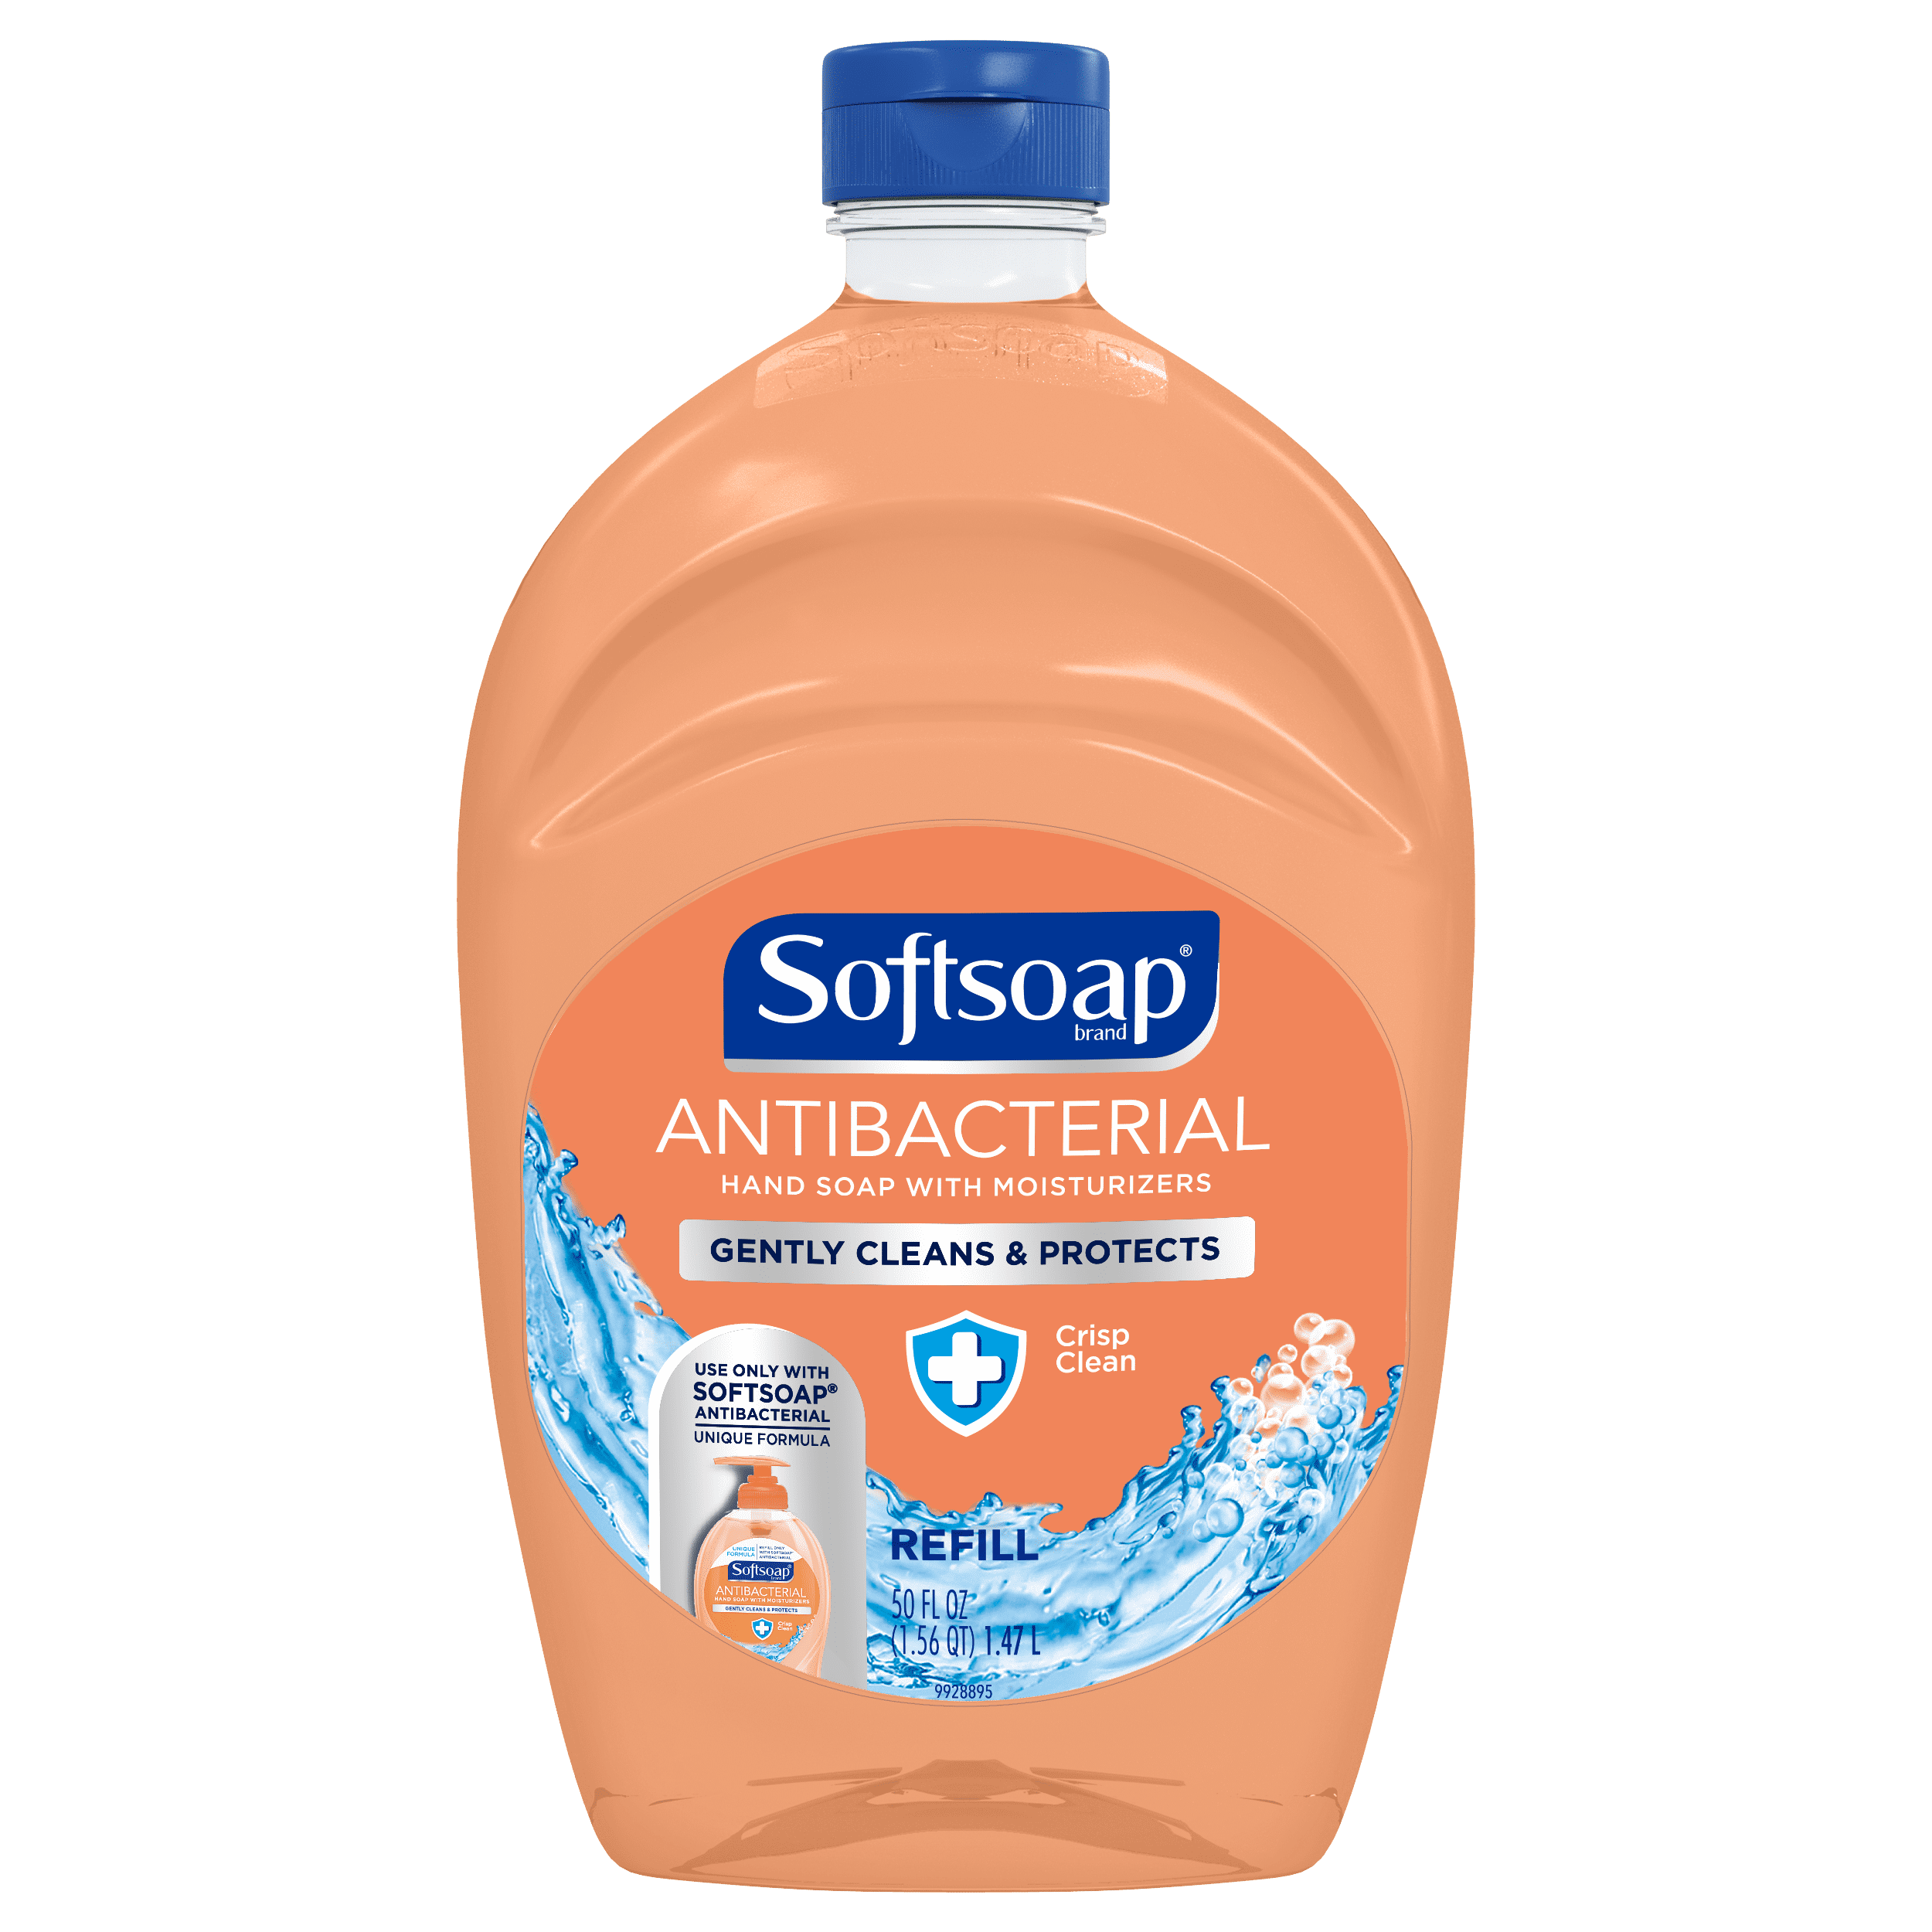 Softsoap Antibacterial Liquid Hand Soap Refill, Crisp Clean 50oz